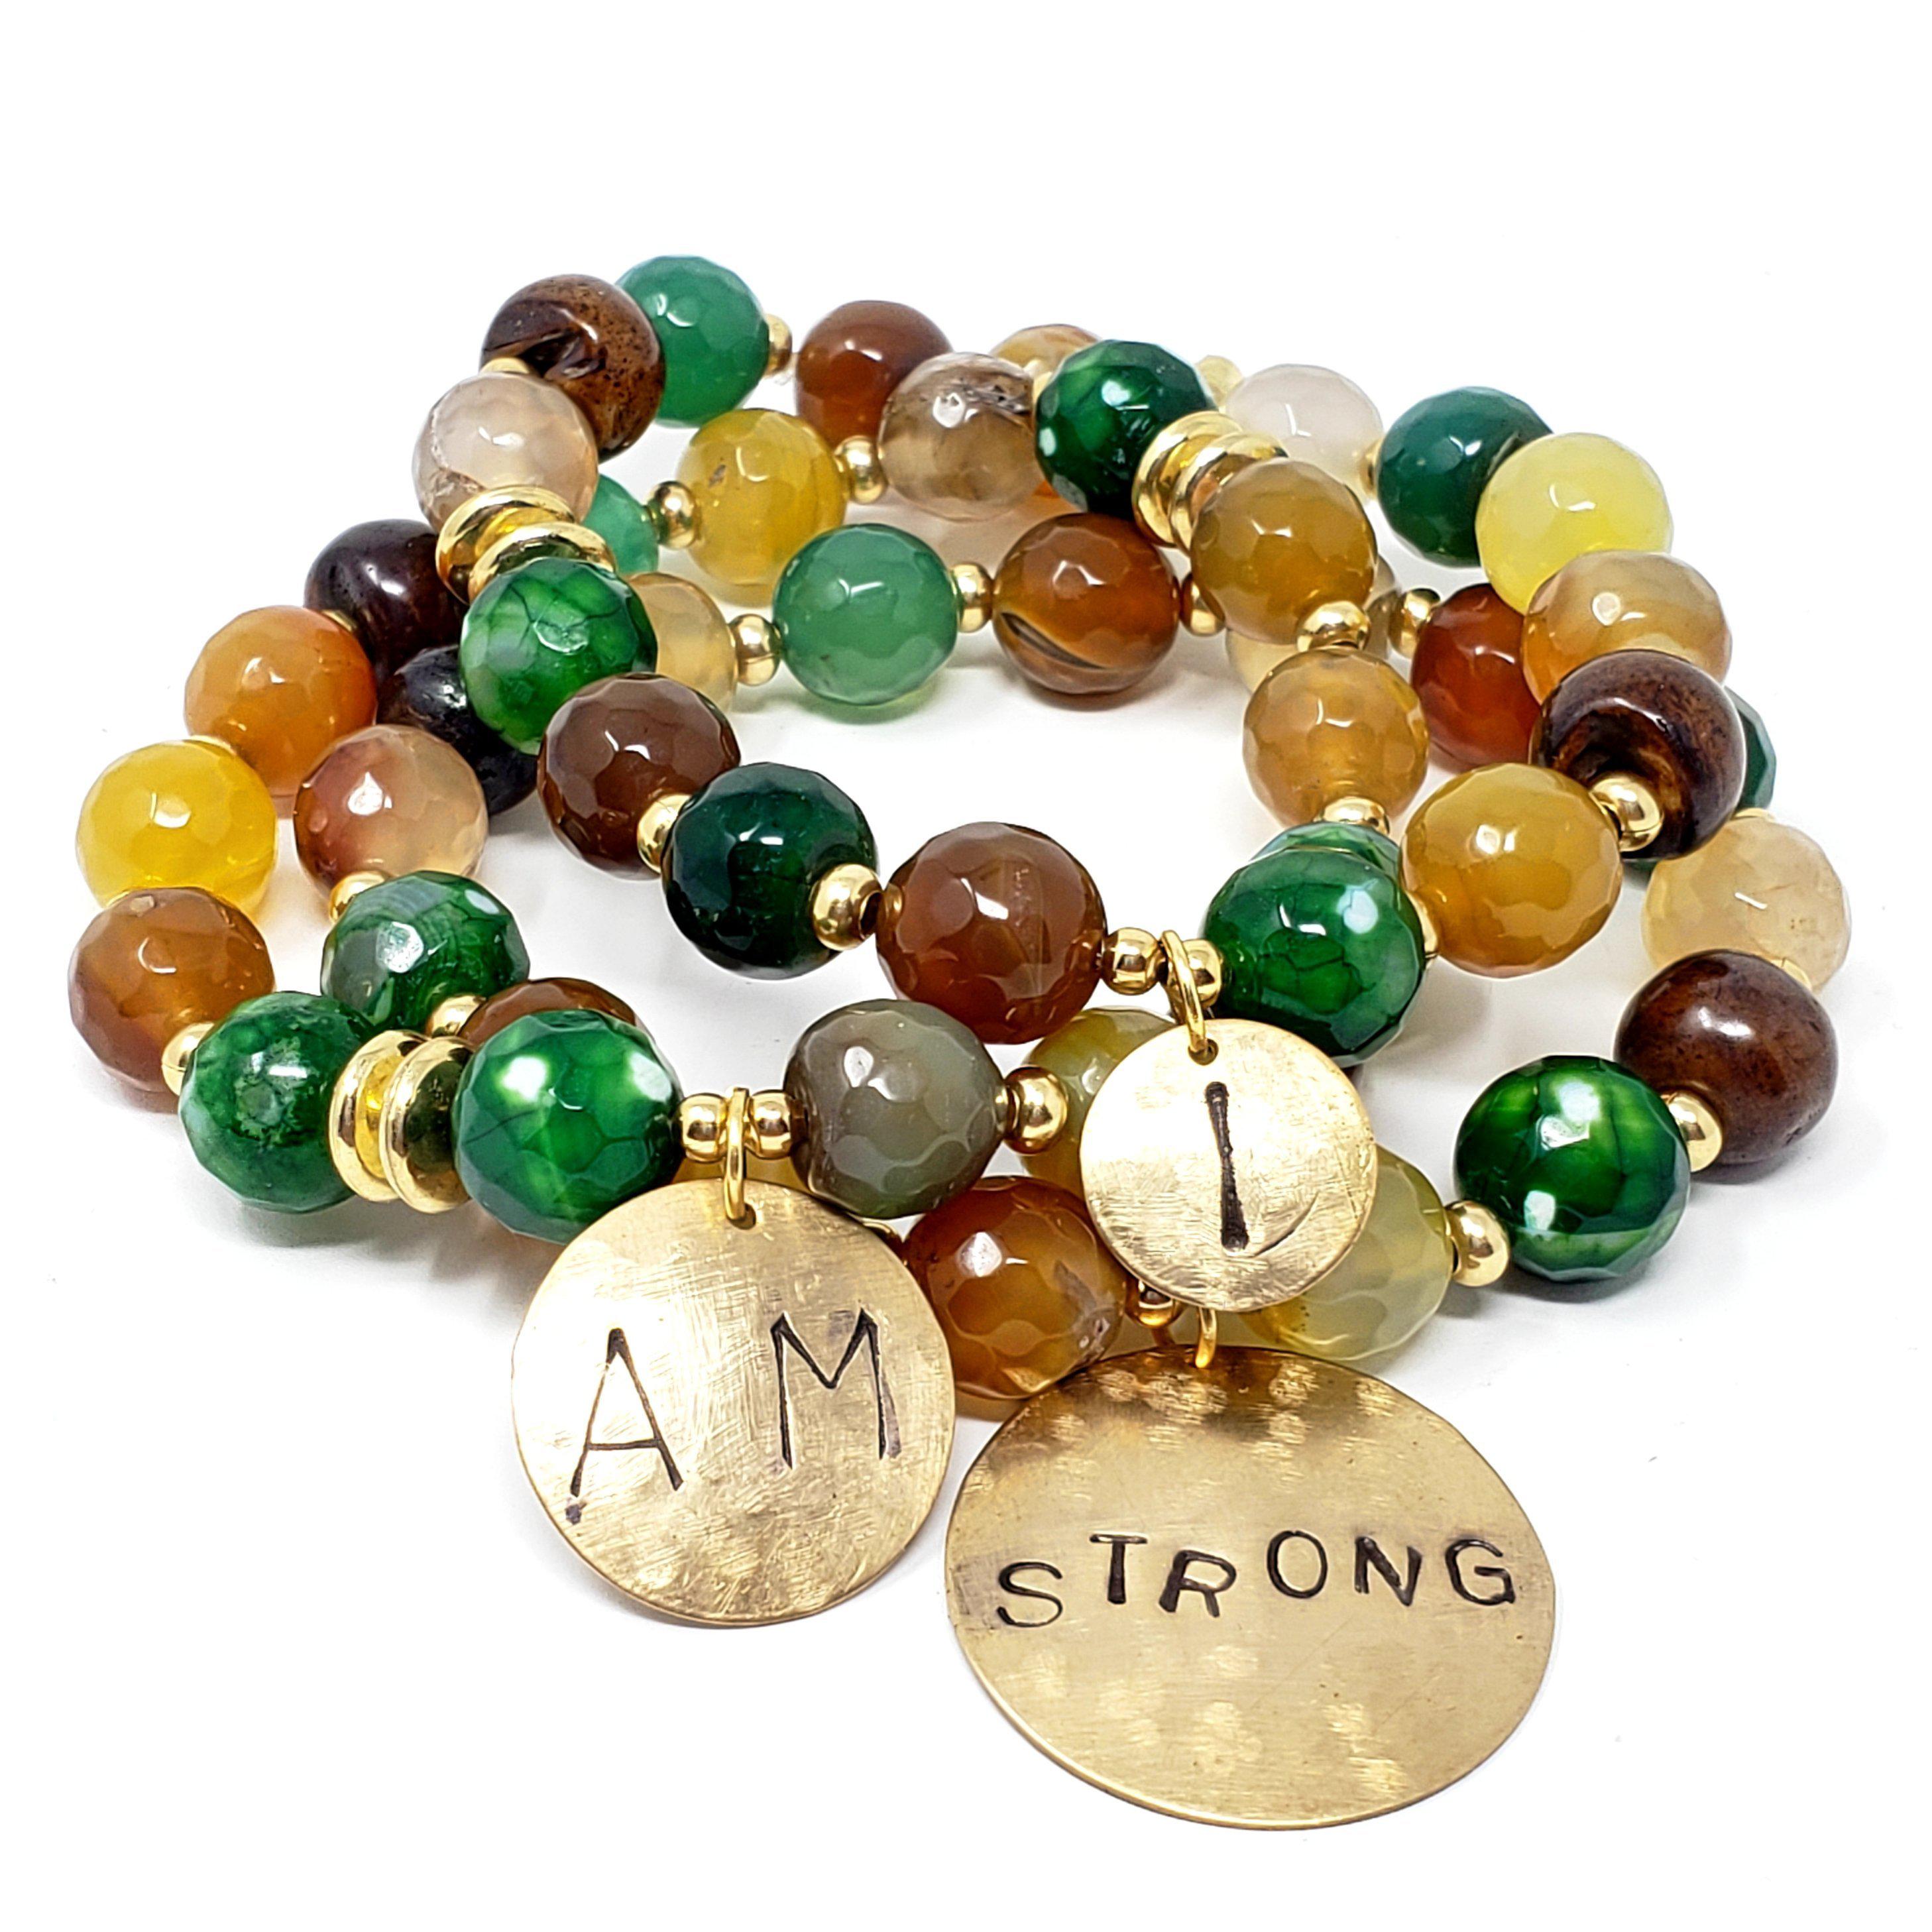 "I Am Strong" Affirmation Bracelets